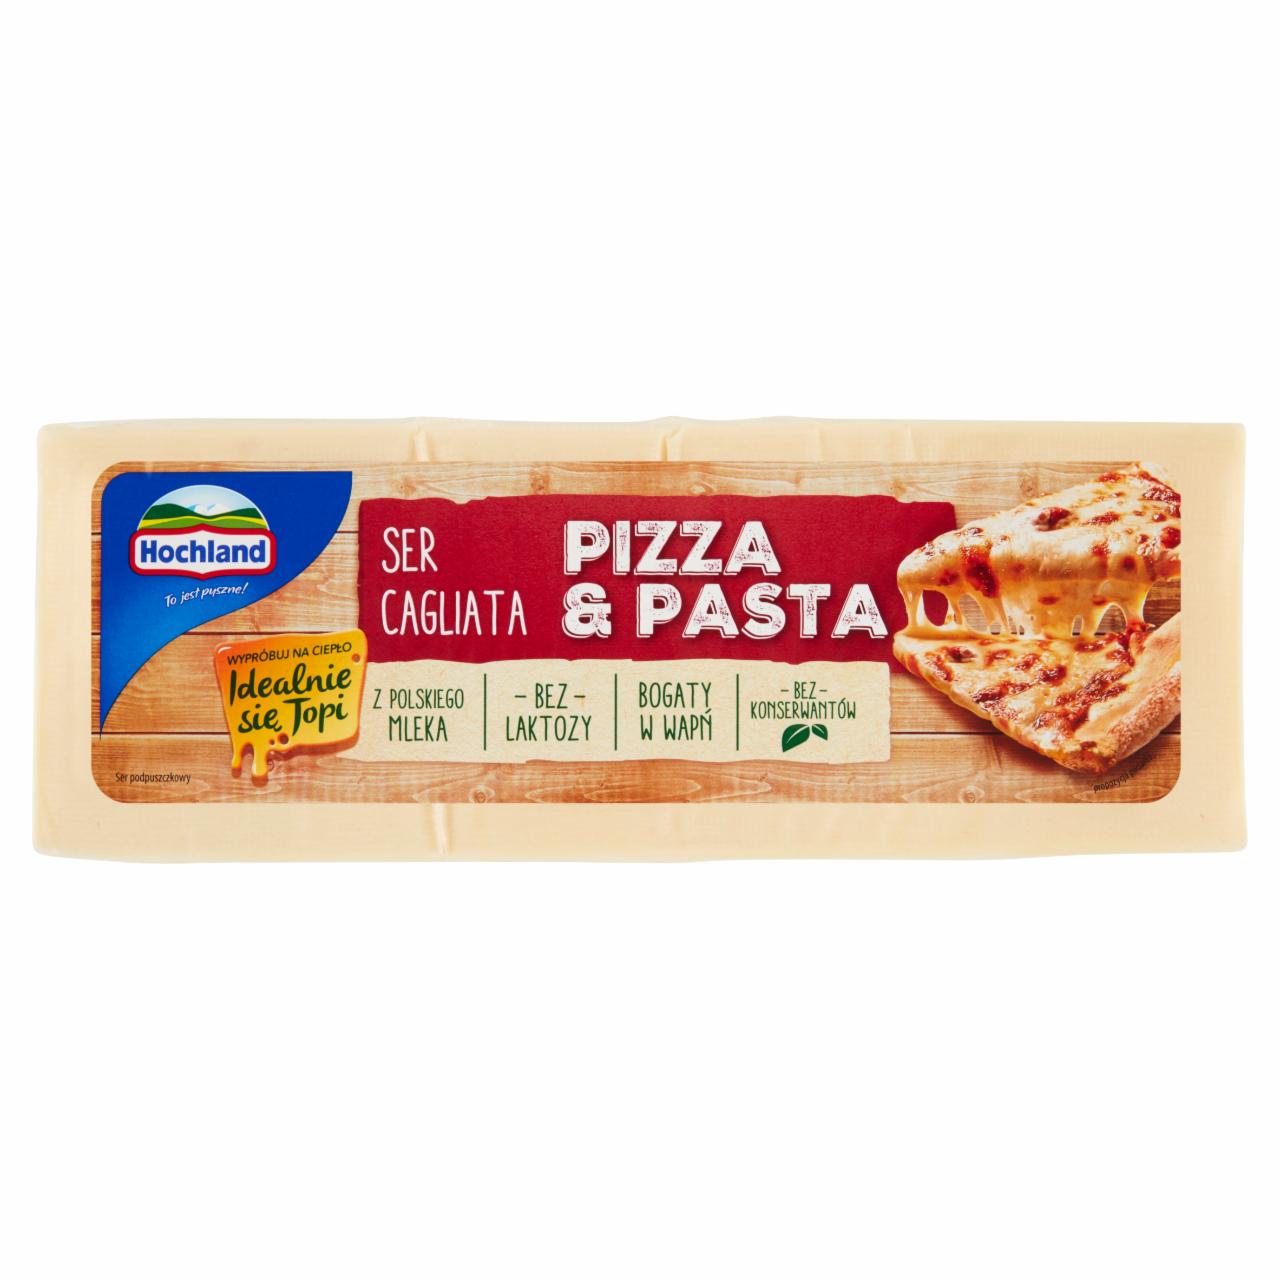 Zdjęcia - Hochland Pizza & Pasta Ser Cagliata 3,20 kg